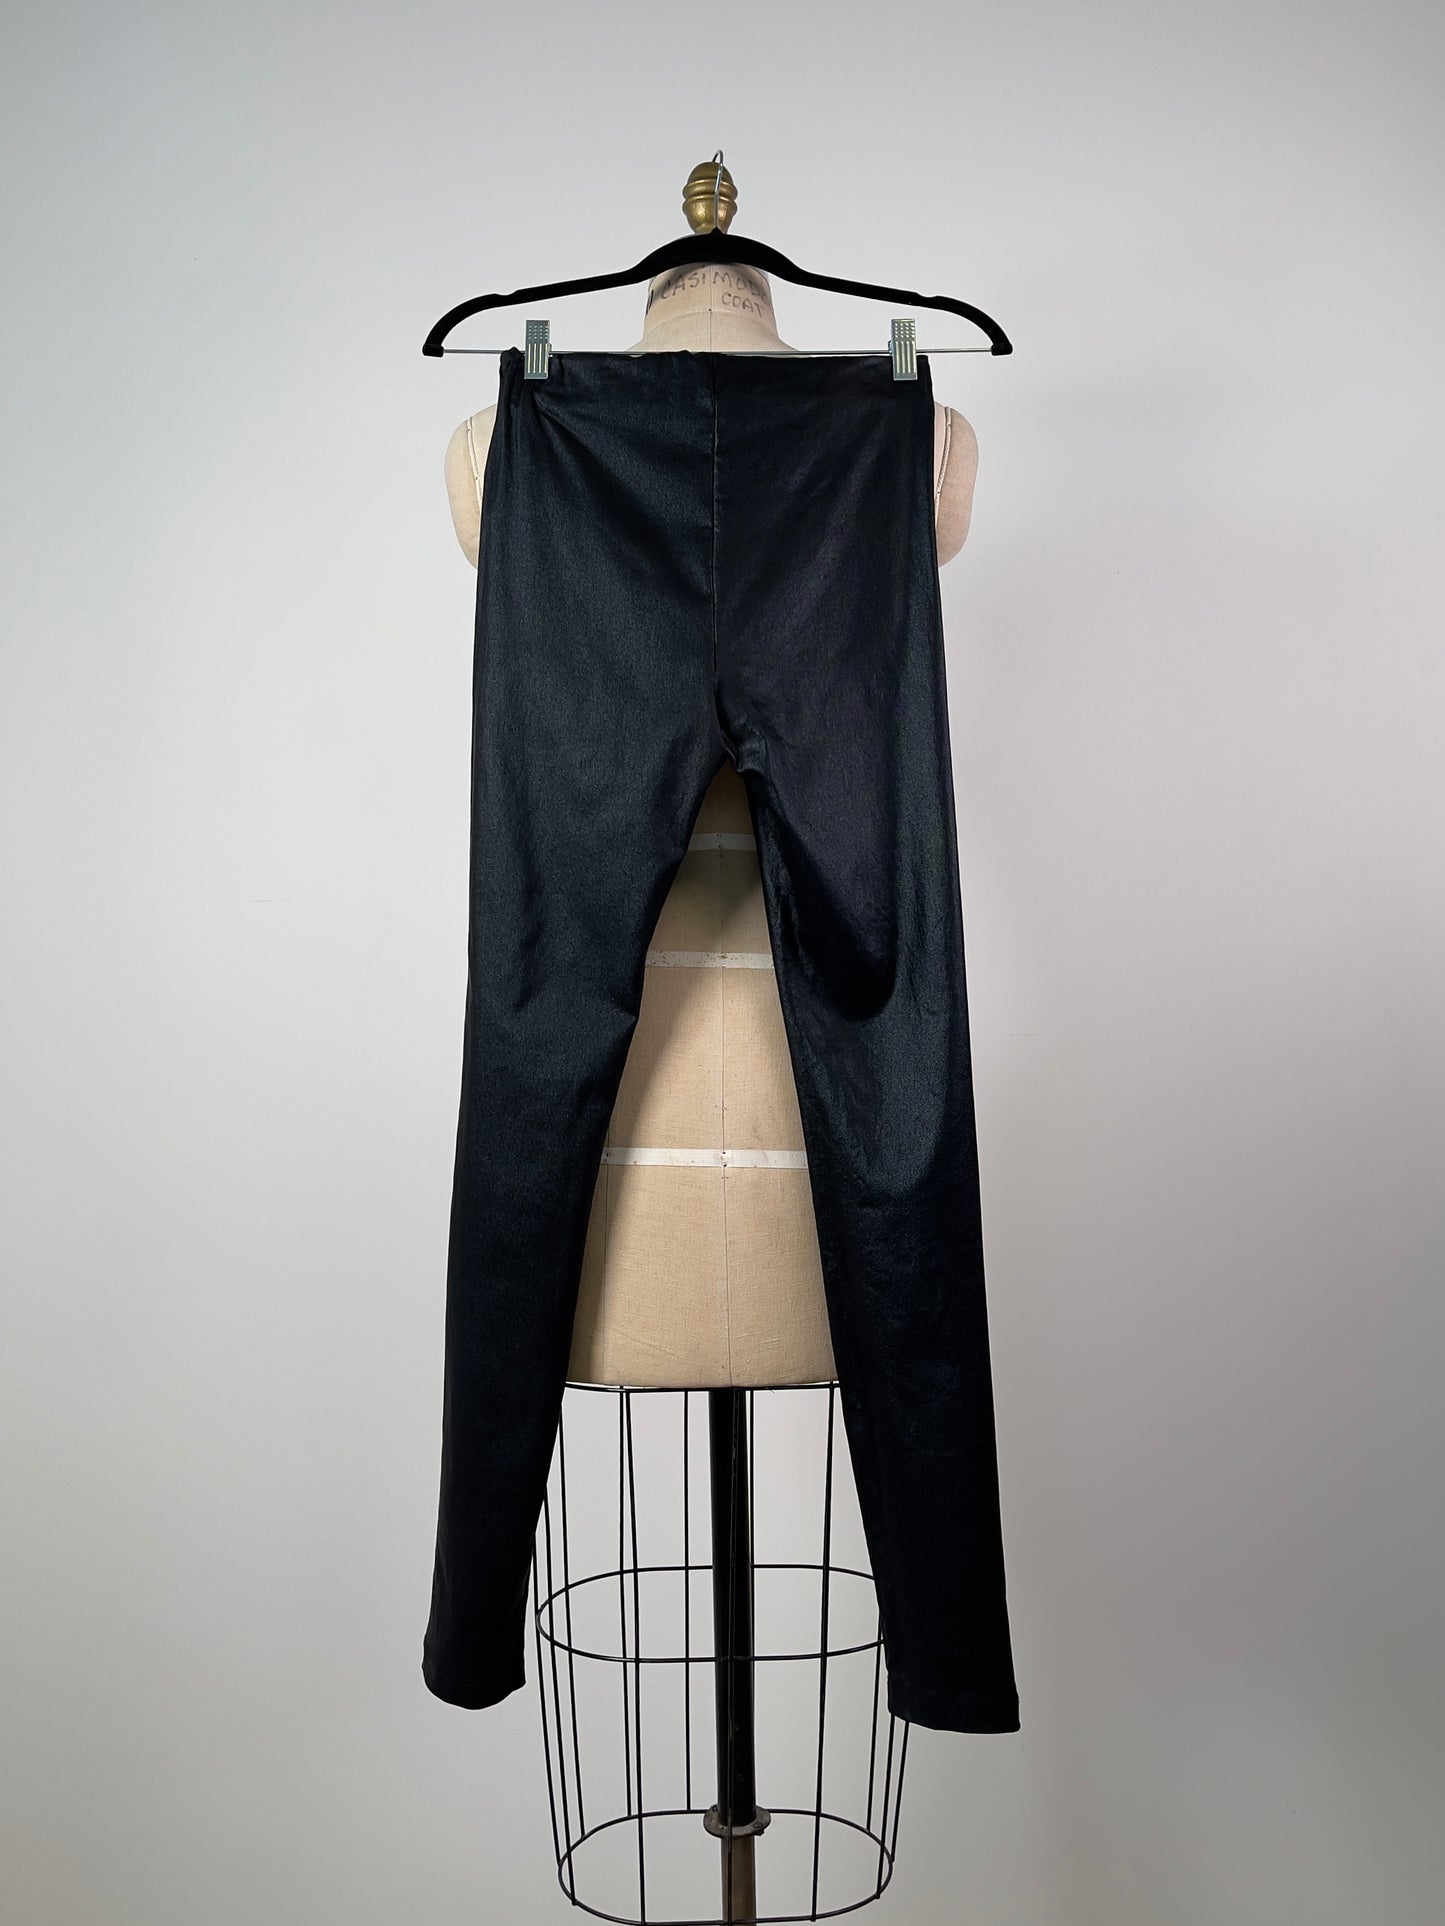 Pantalon legging noir métallisé (XS)